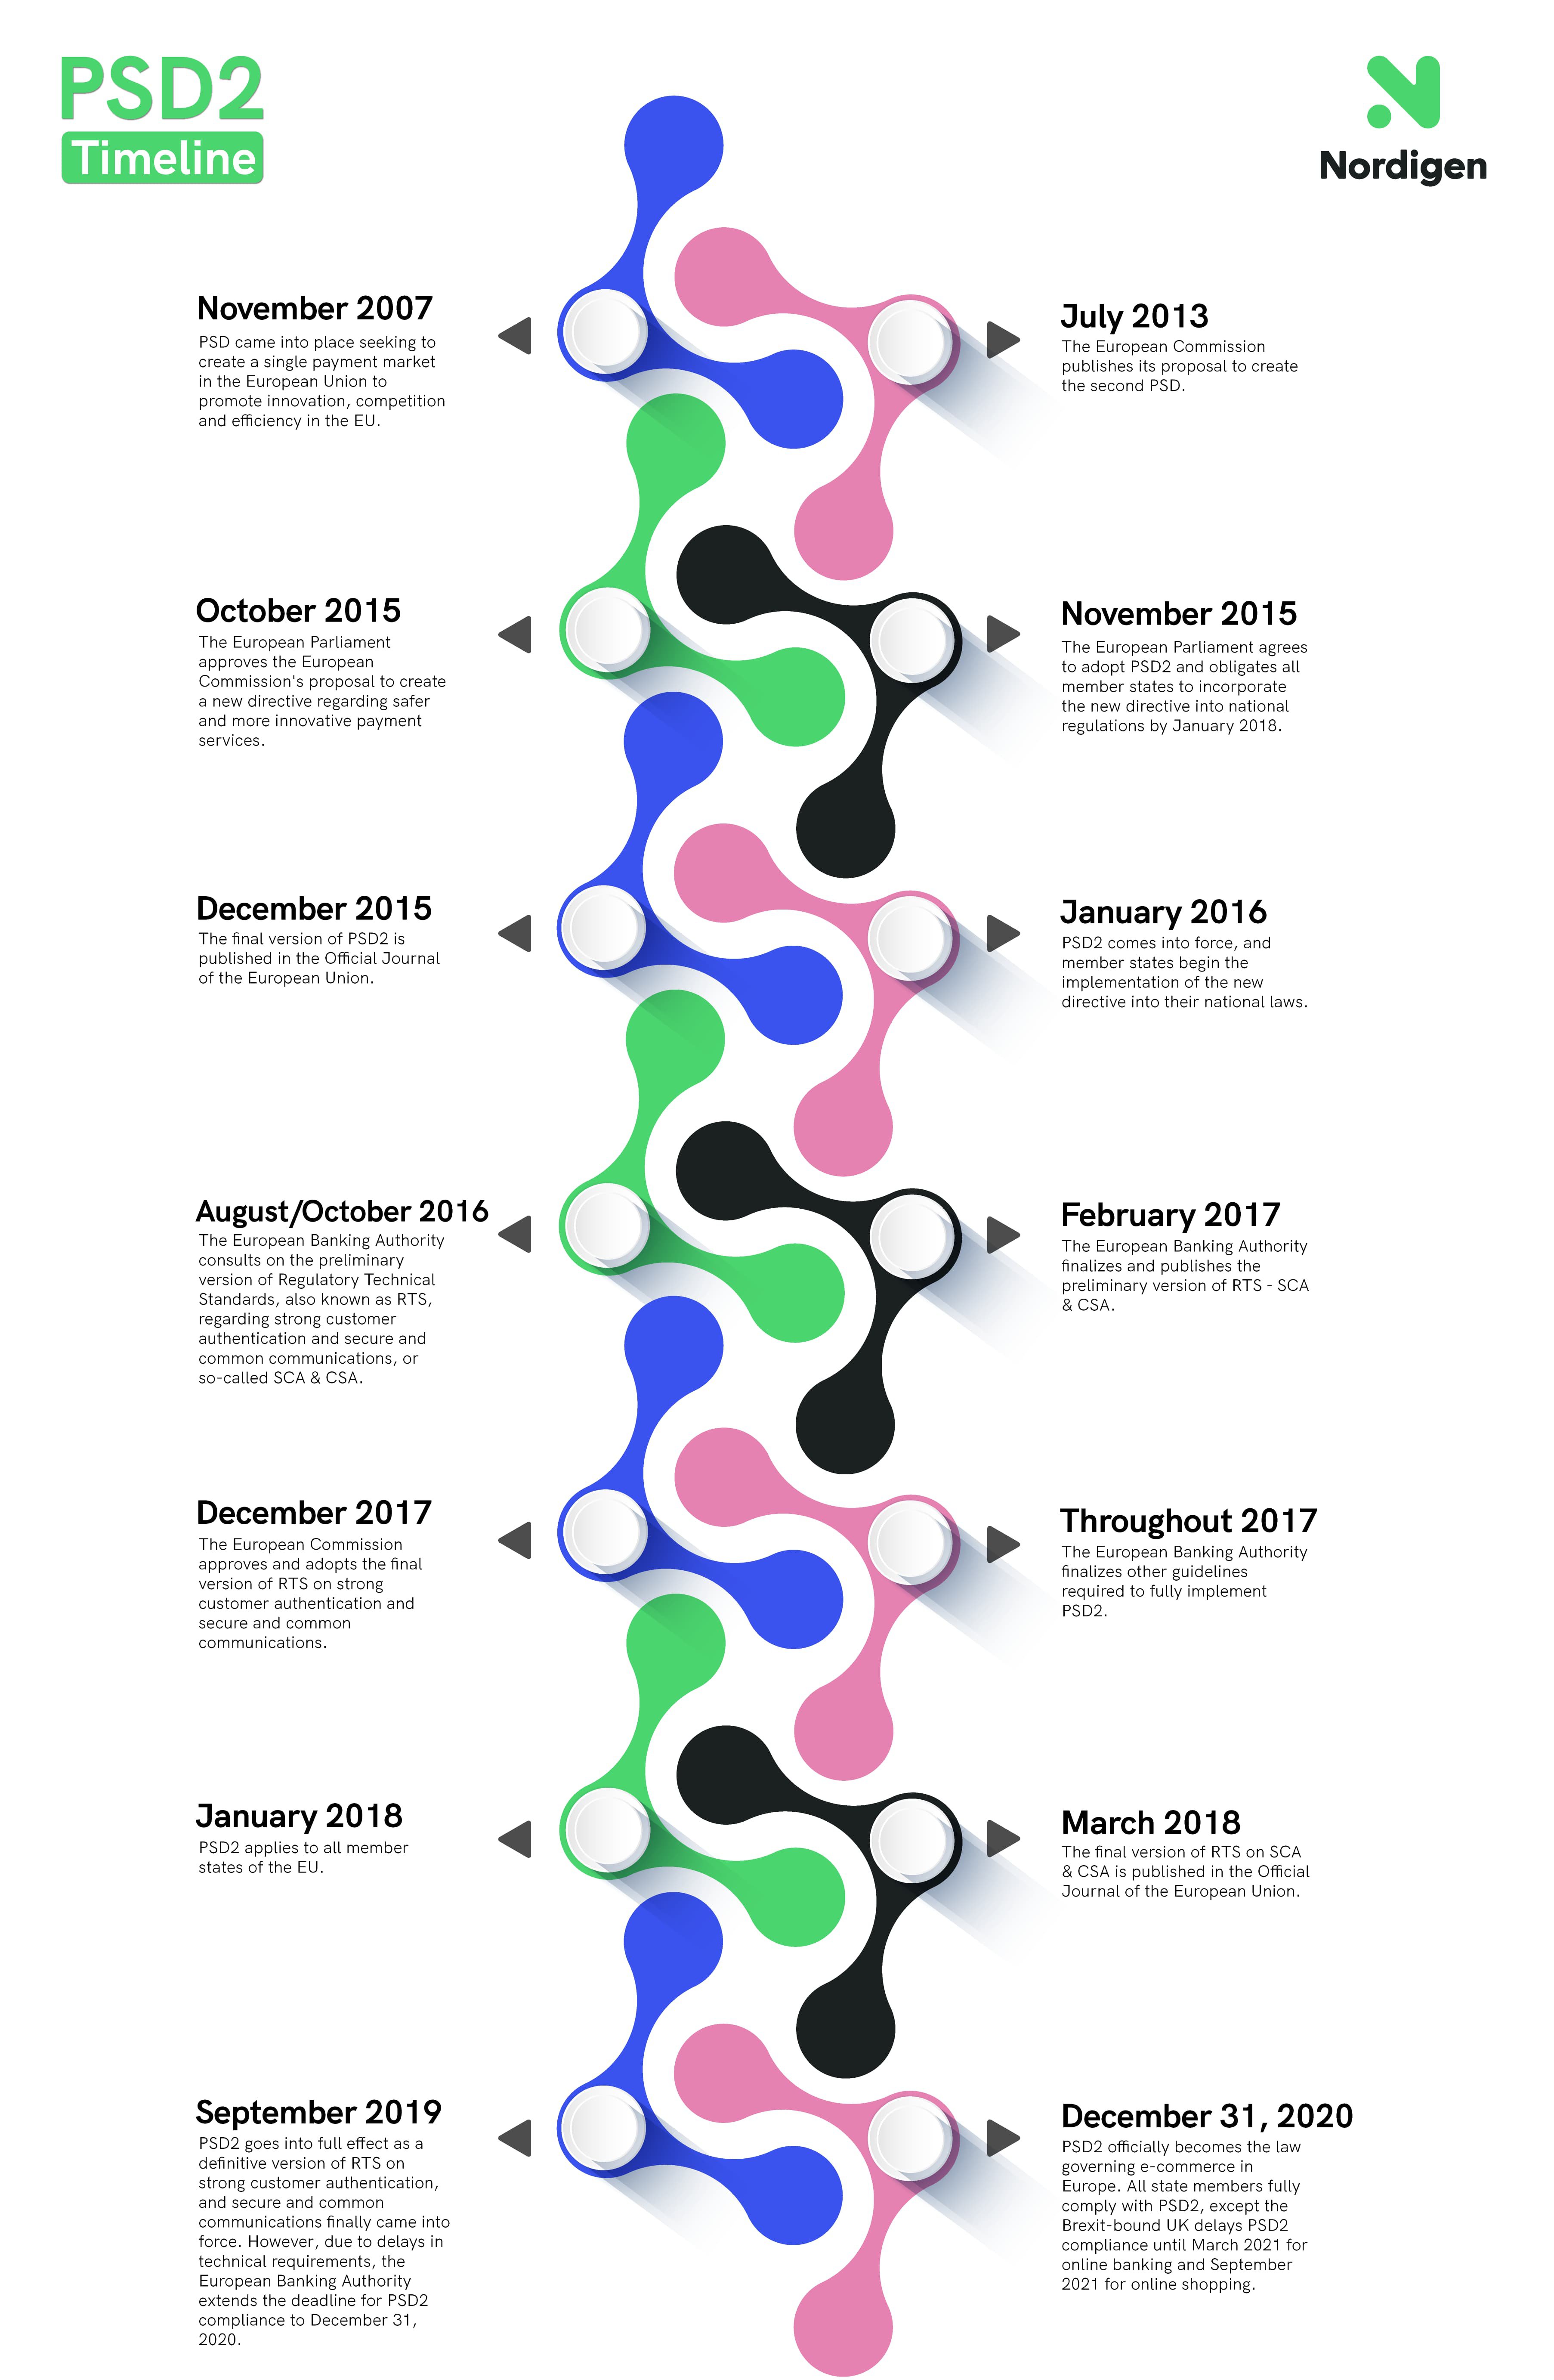 PSD2 regulation Timeline